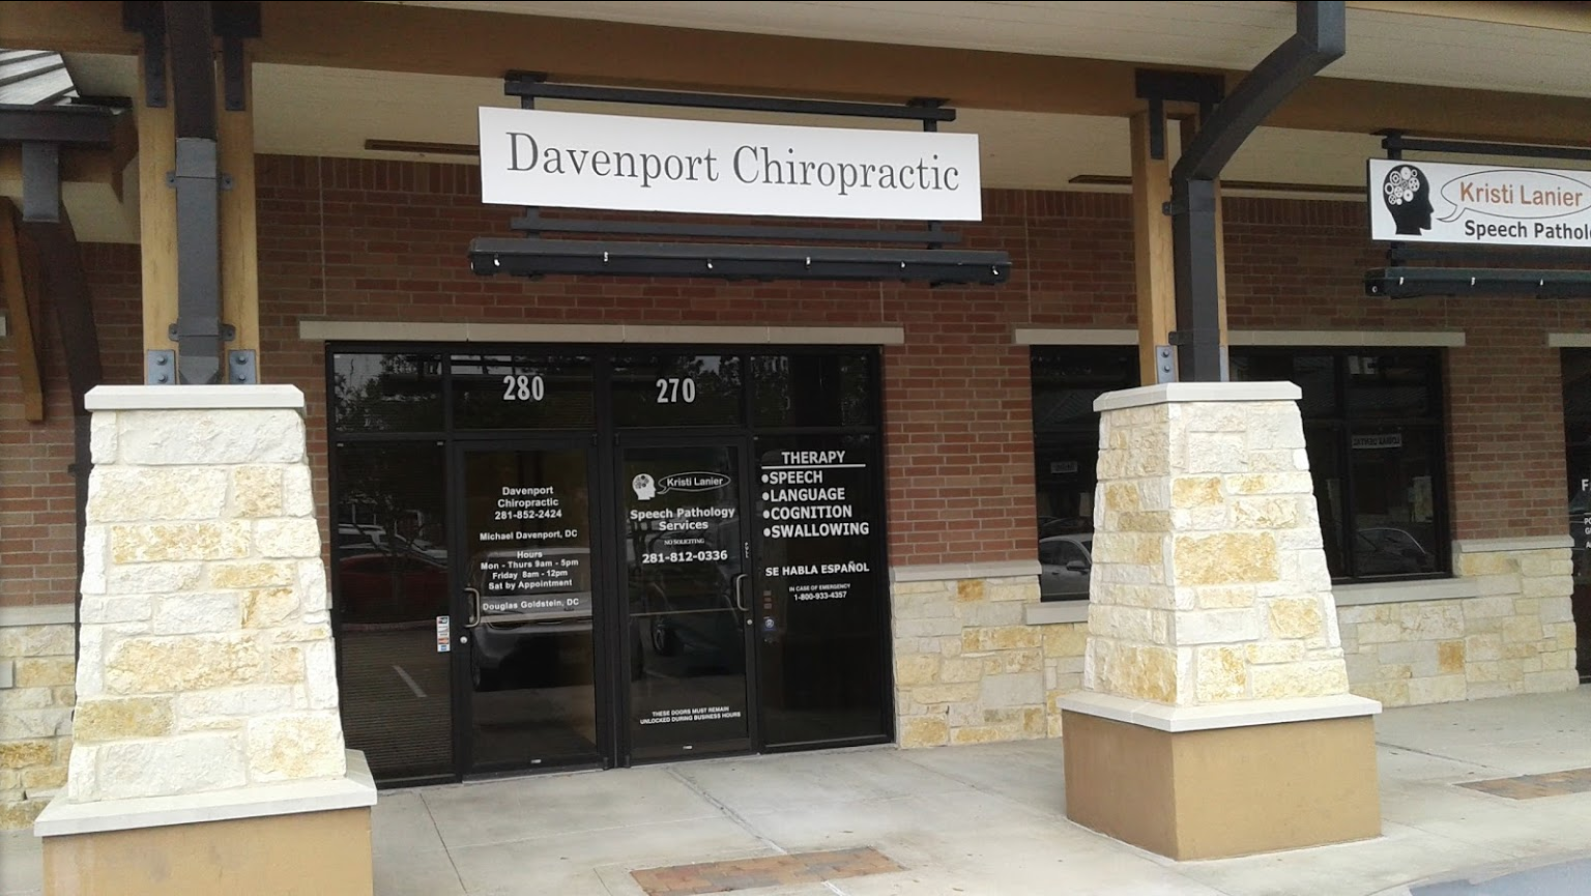 Davenport Chiropractic Humble Texas 77346